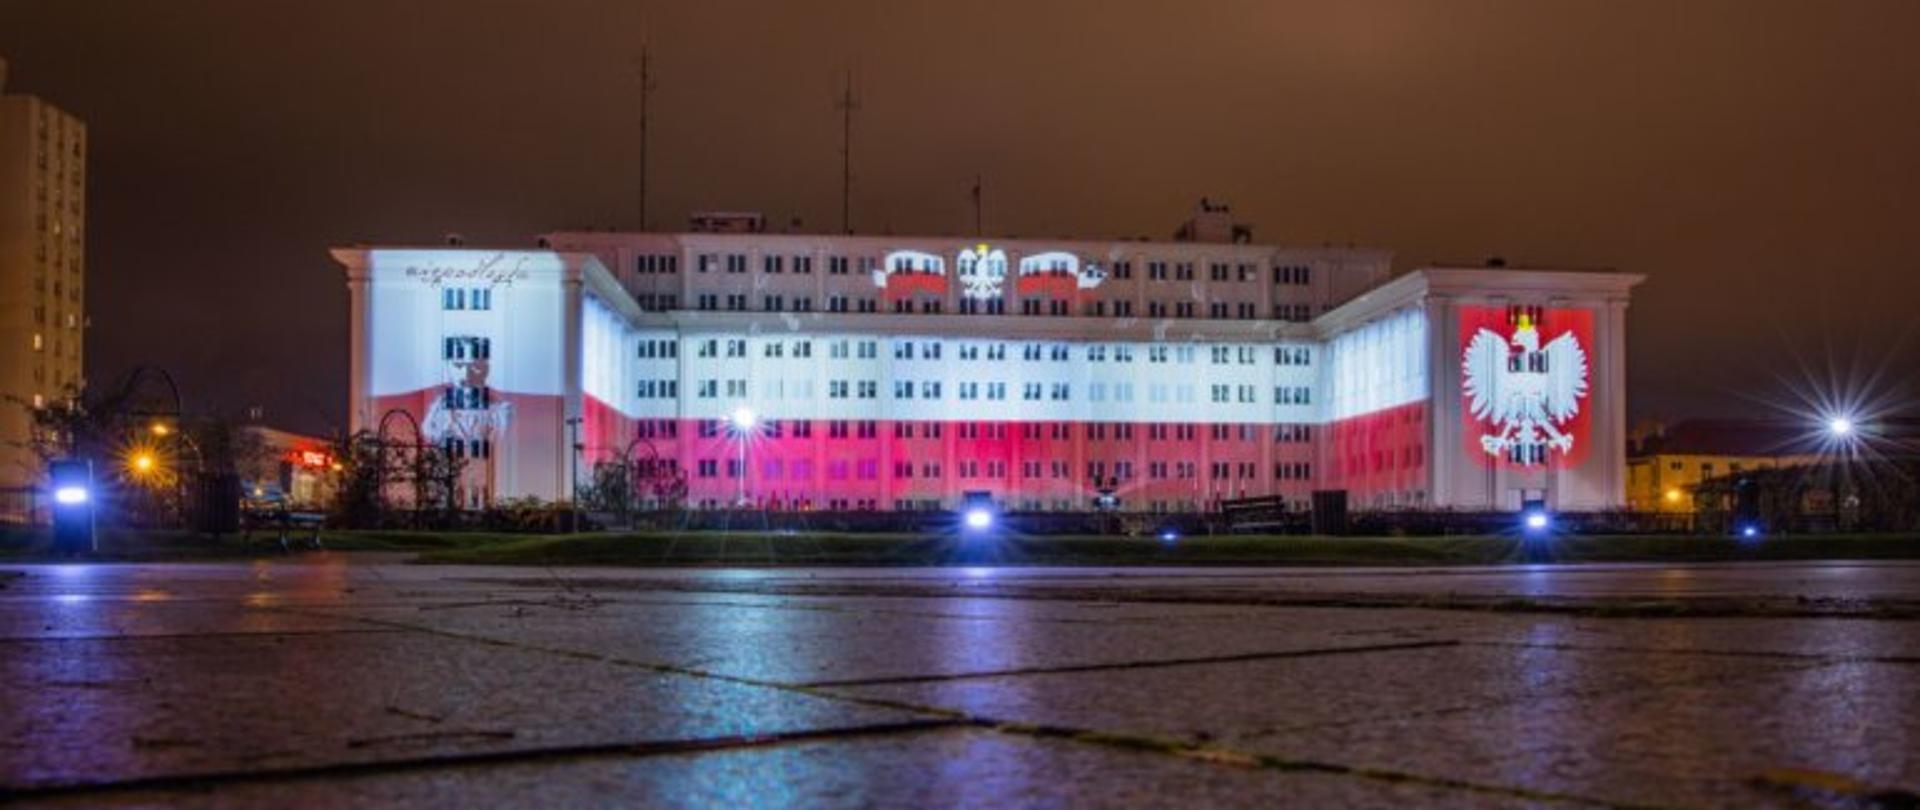 Budynek Podkarpackiego Urzędu Wojewódzkiego w Rzeszowie z iluminacją